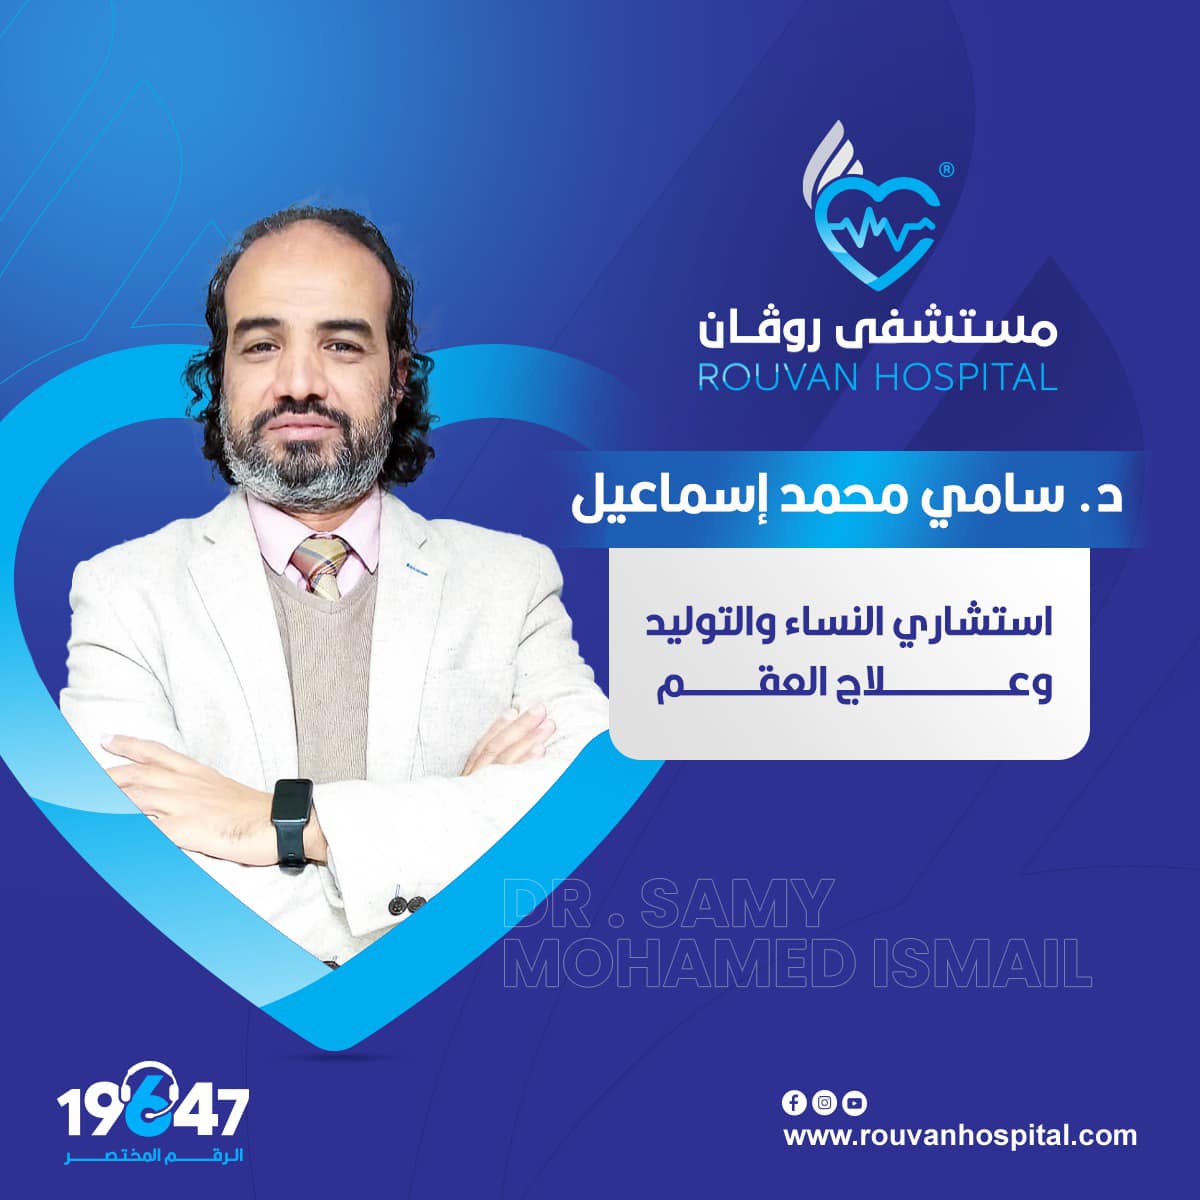 Dr. Sami Ismael